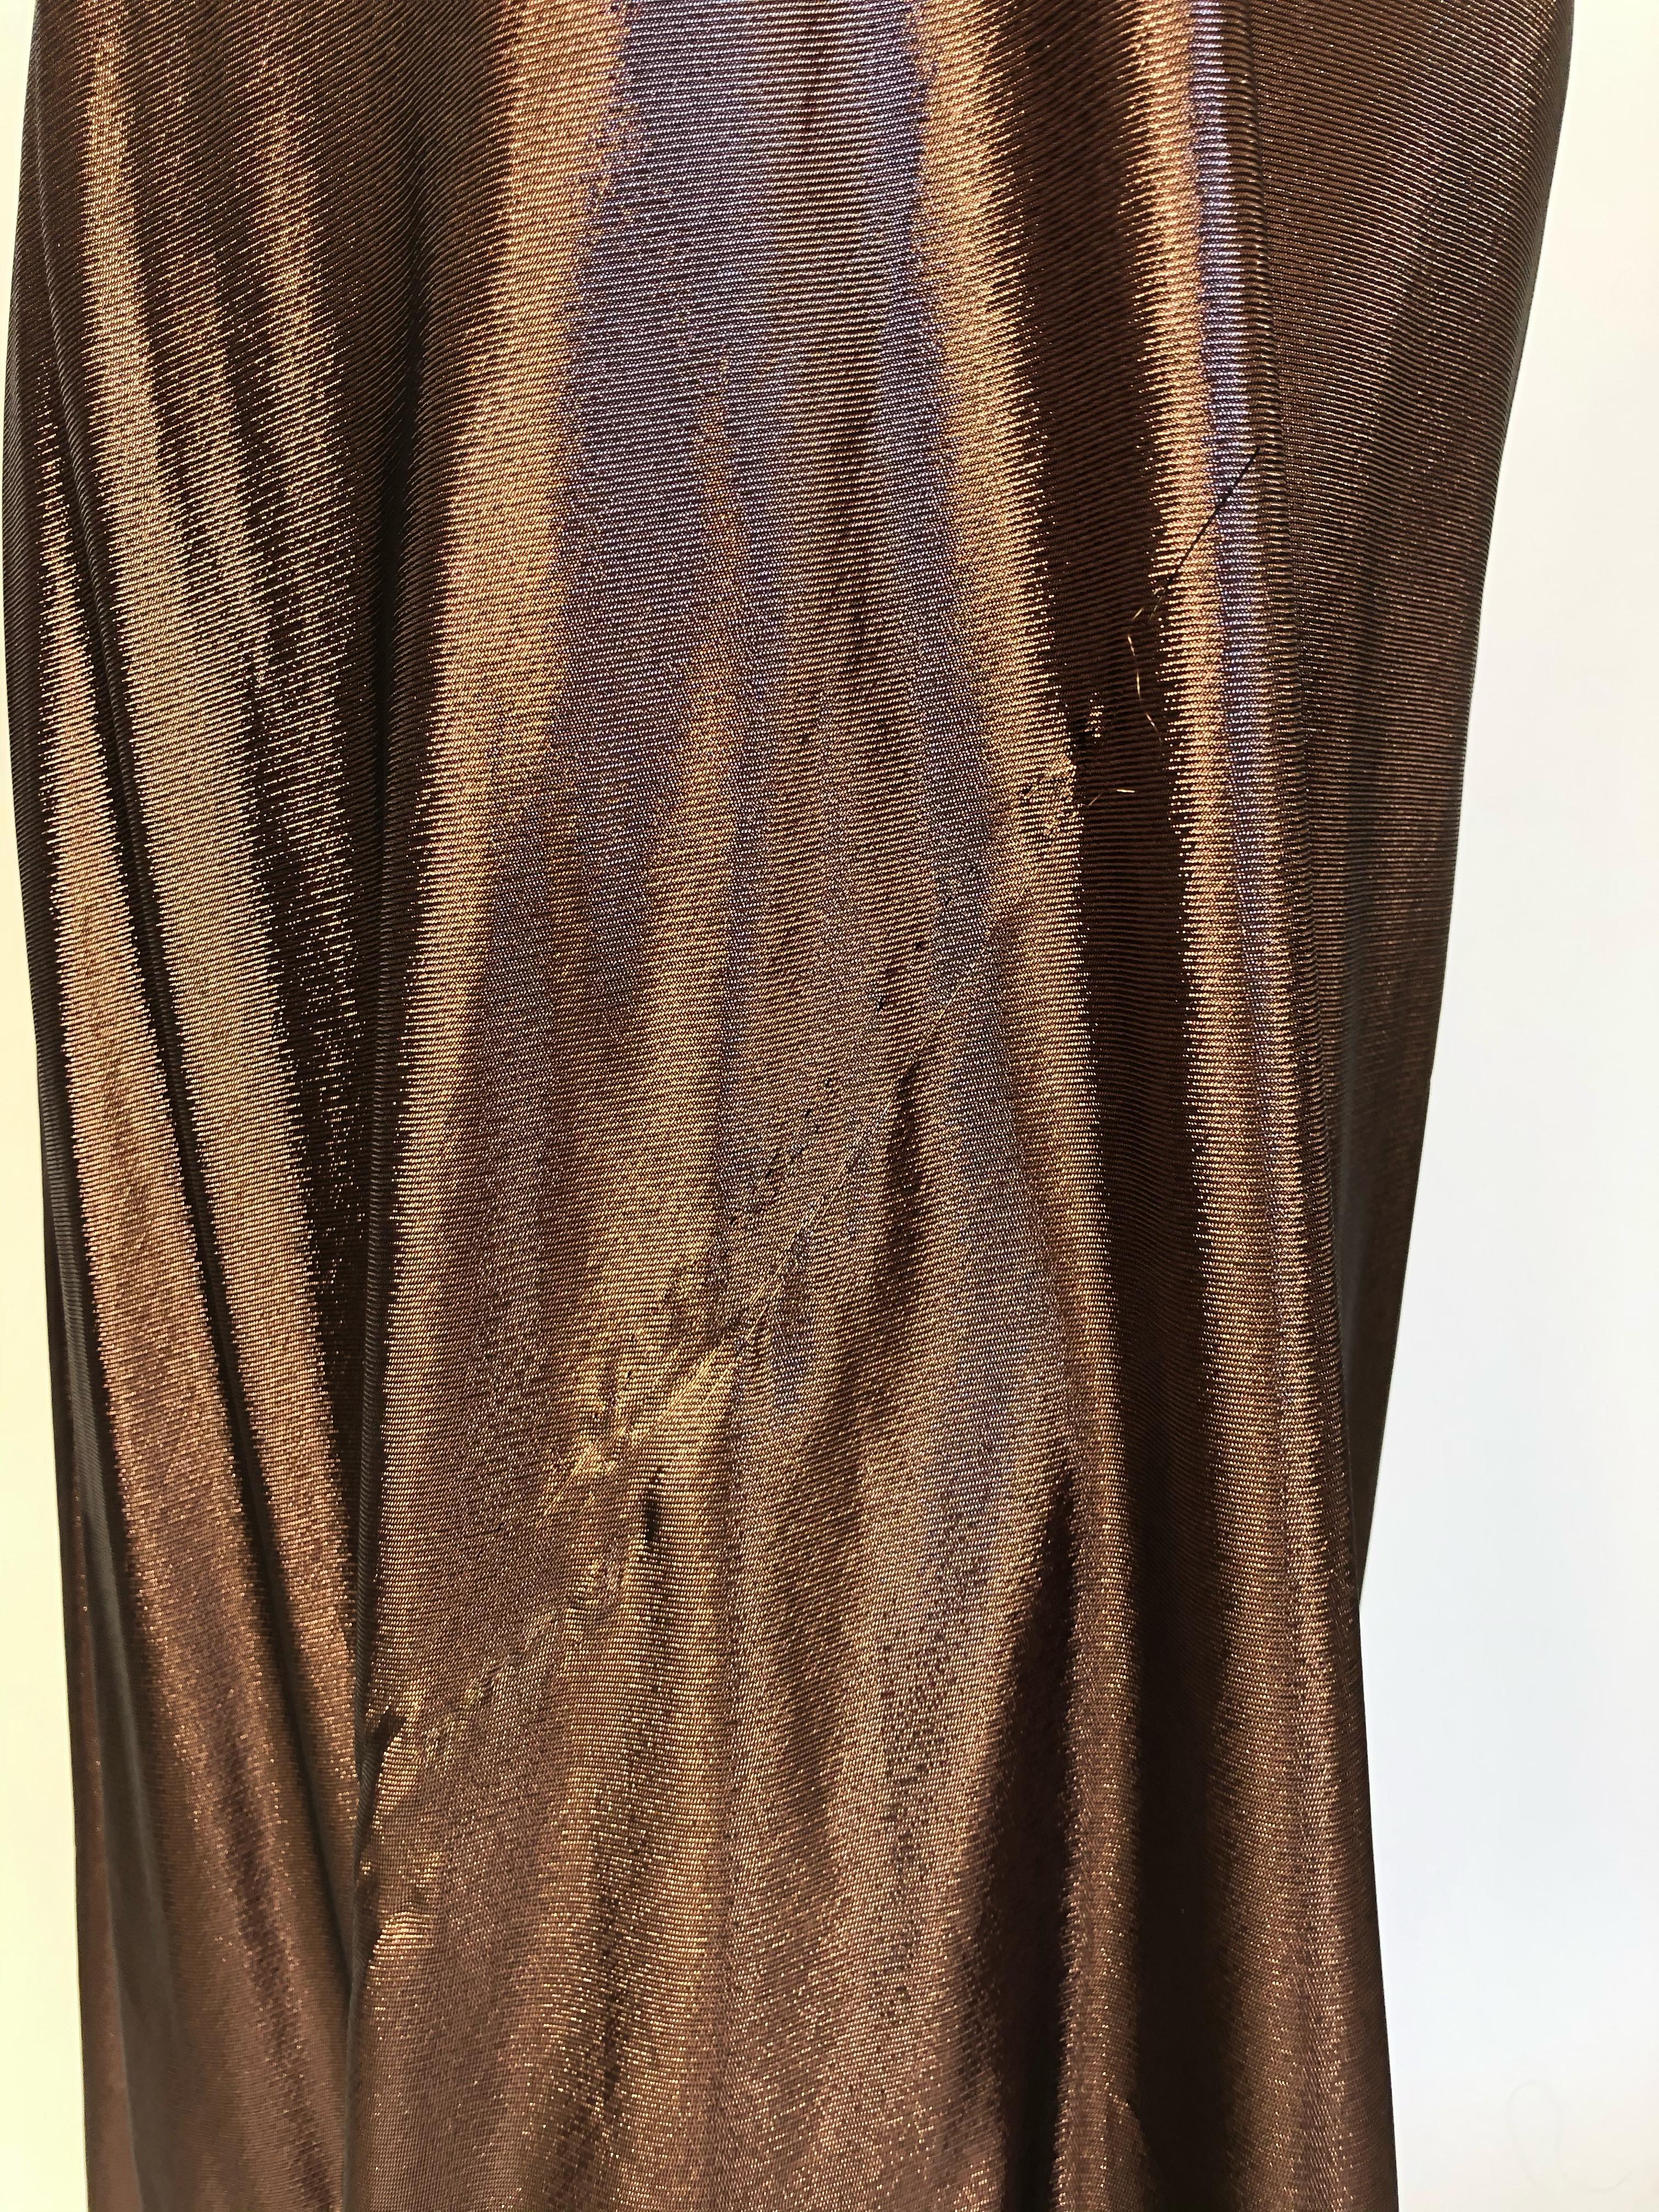 Women's Alberta Ferretti strapless metallic gown For Sale